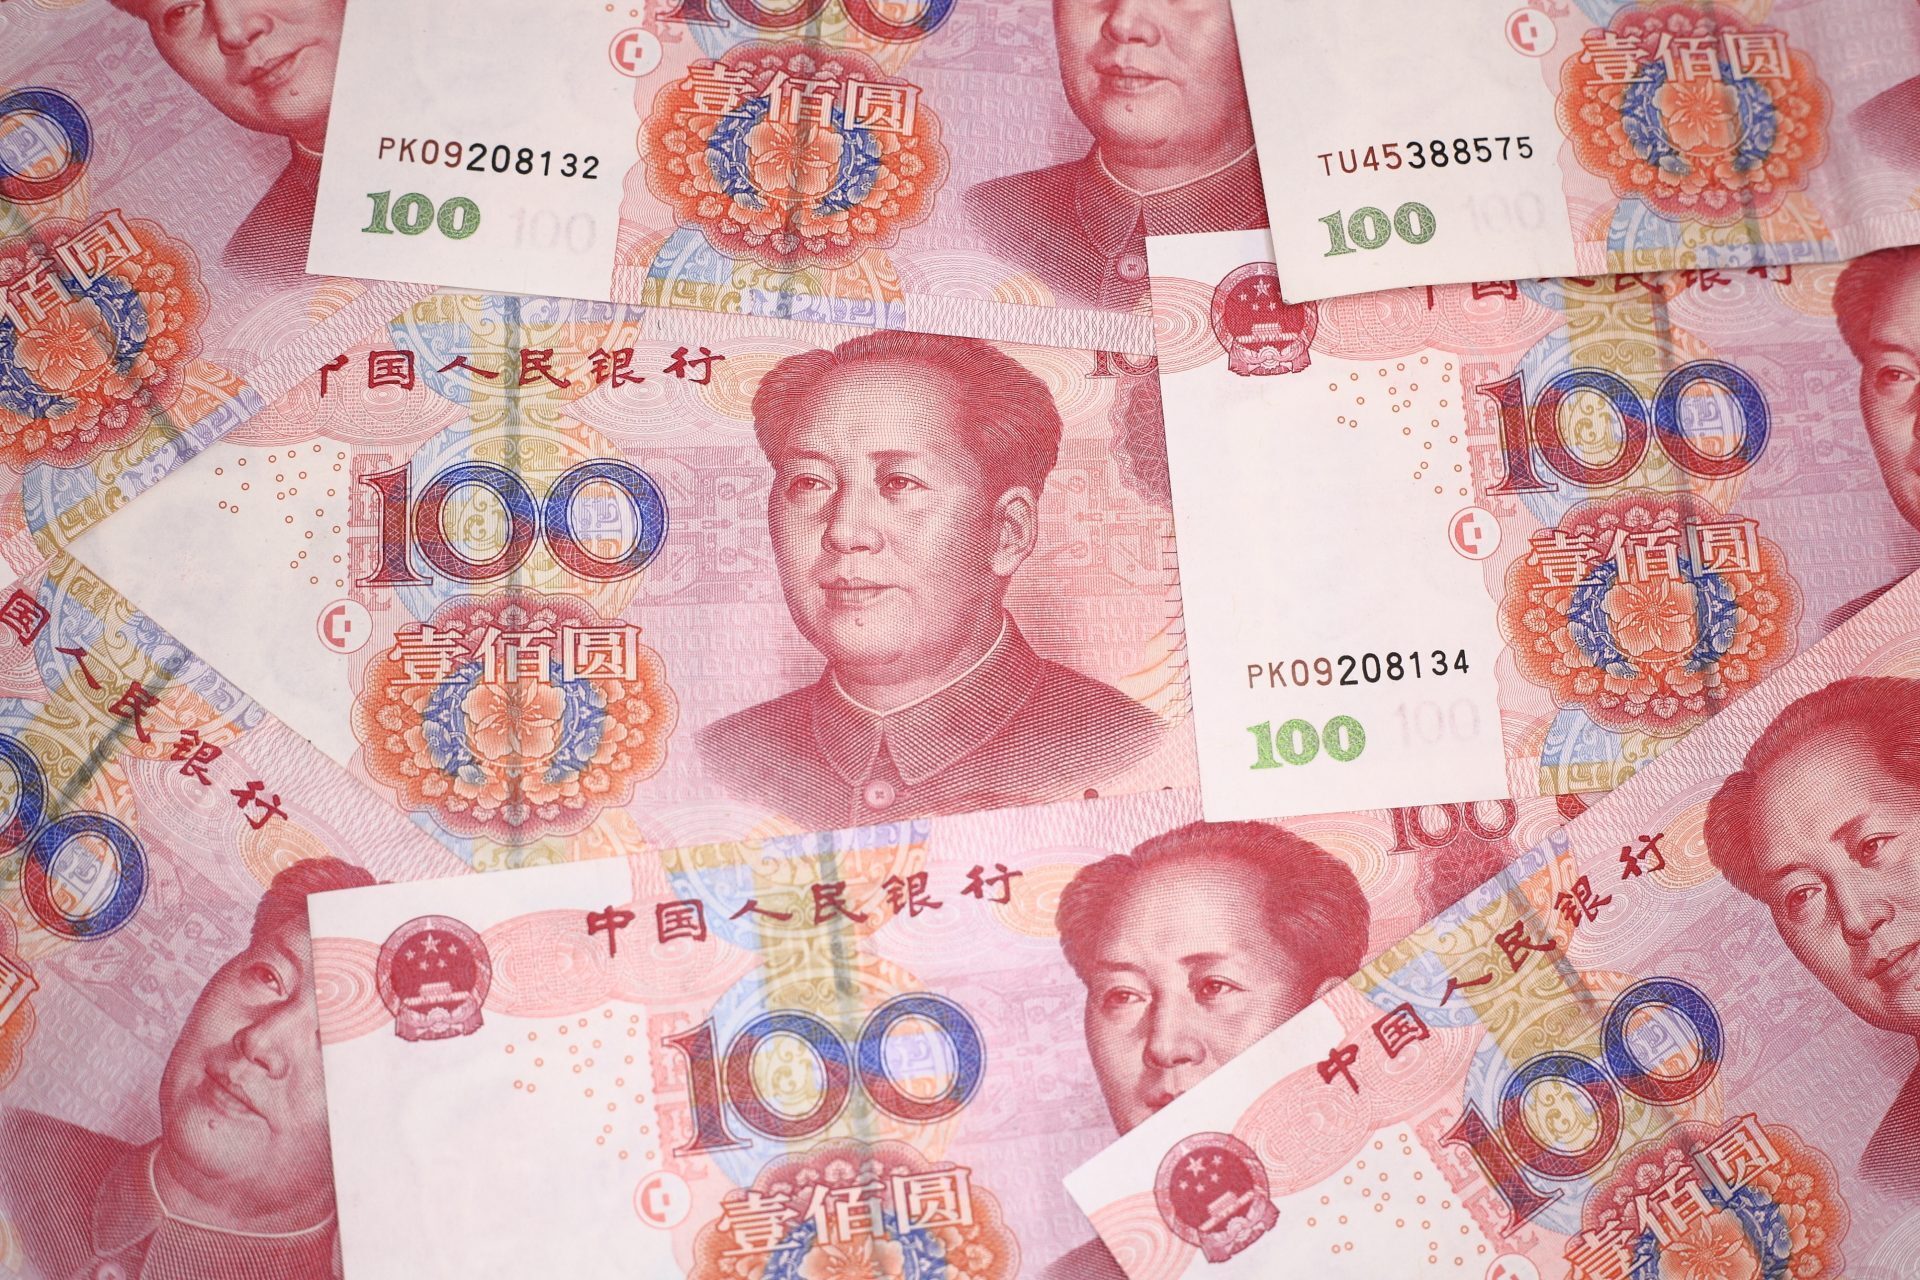 Китайские деньги в рублях перевести. Китайские деньги картинки. Юань валюта Тайланд. RMB валюта какой страны. Китайские деньги картинки которые дарят на новый год.